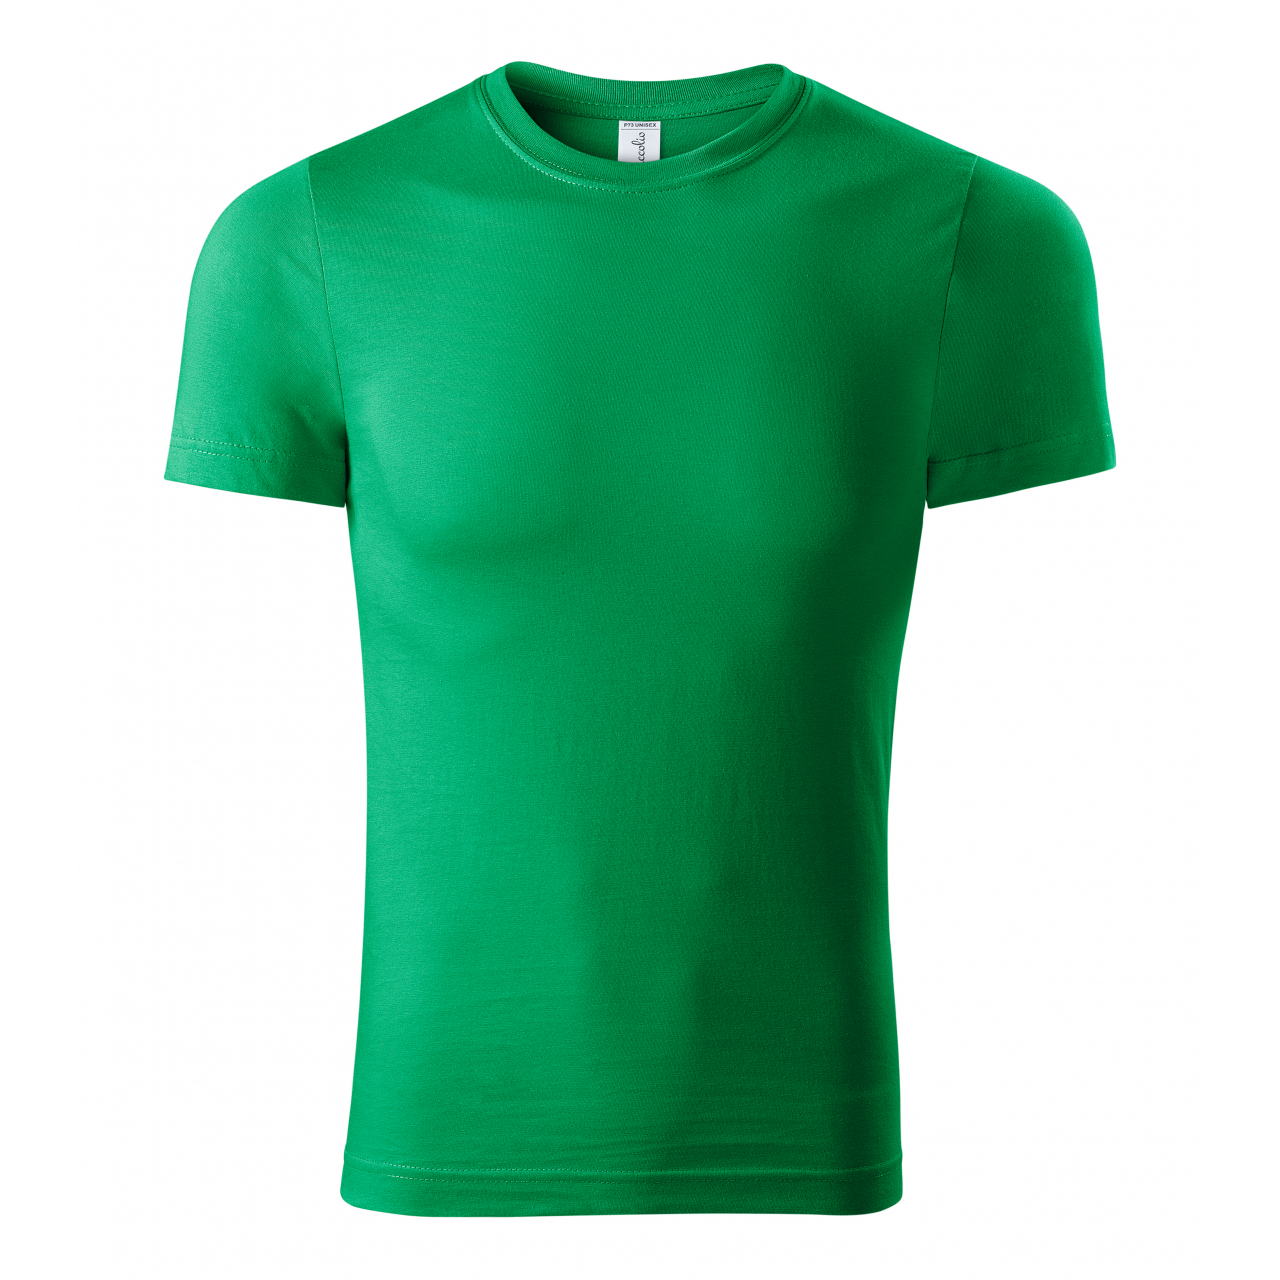 Tričko unisex Piccolio Paint - zelené, XL